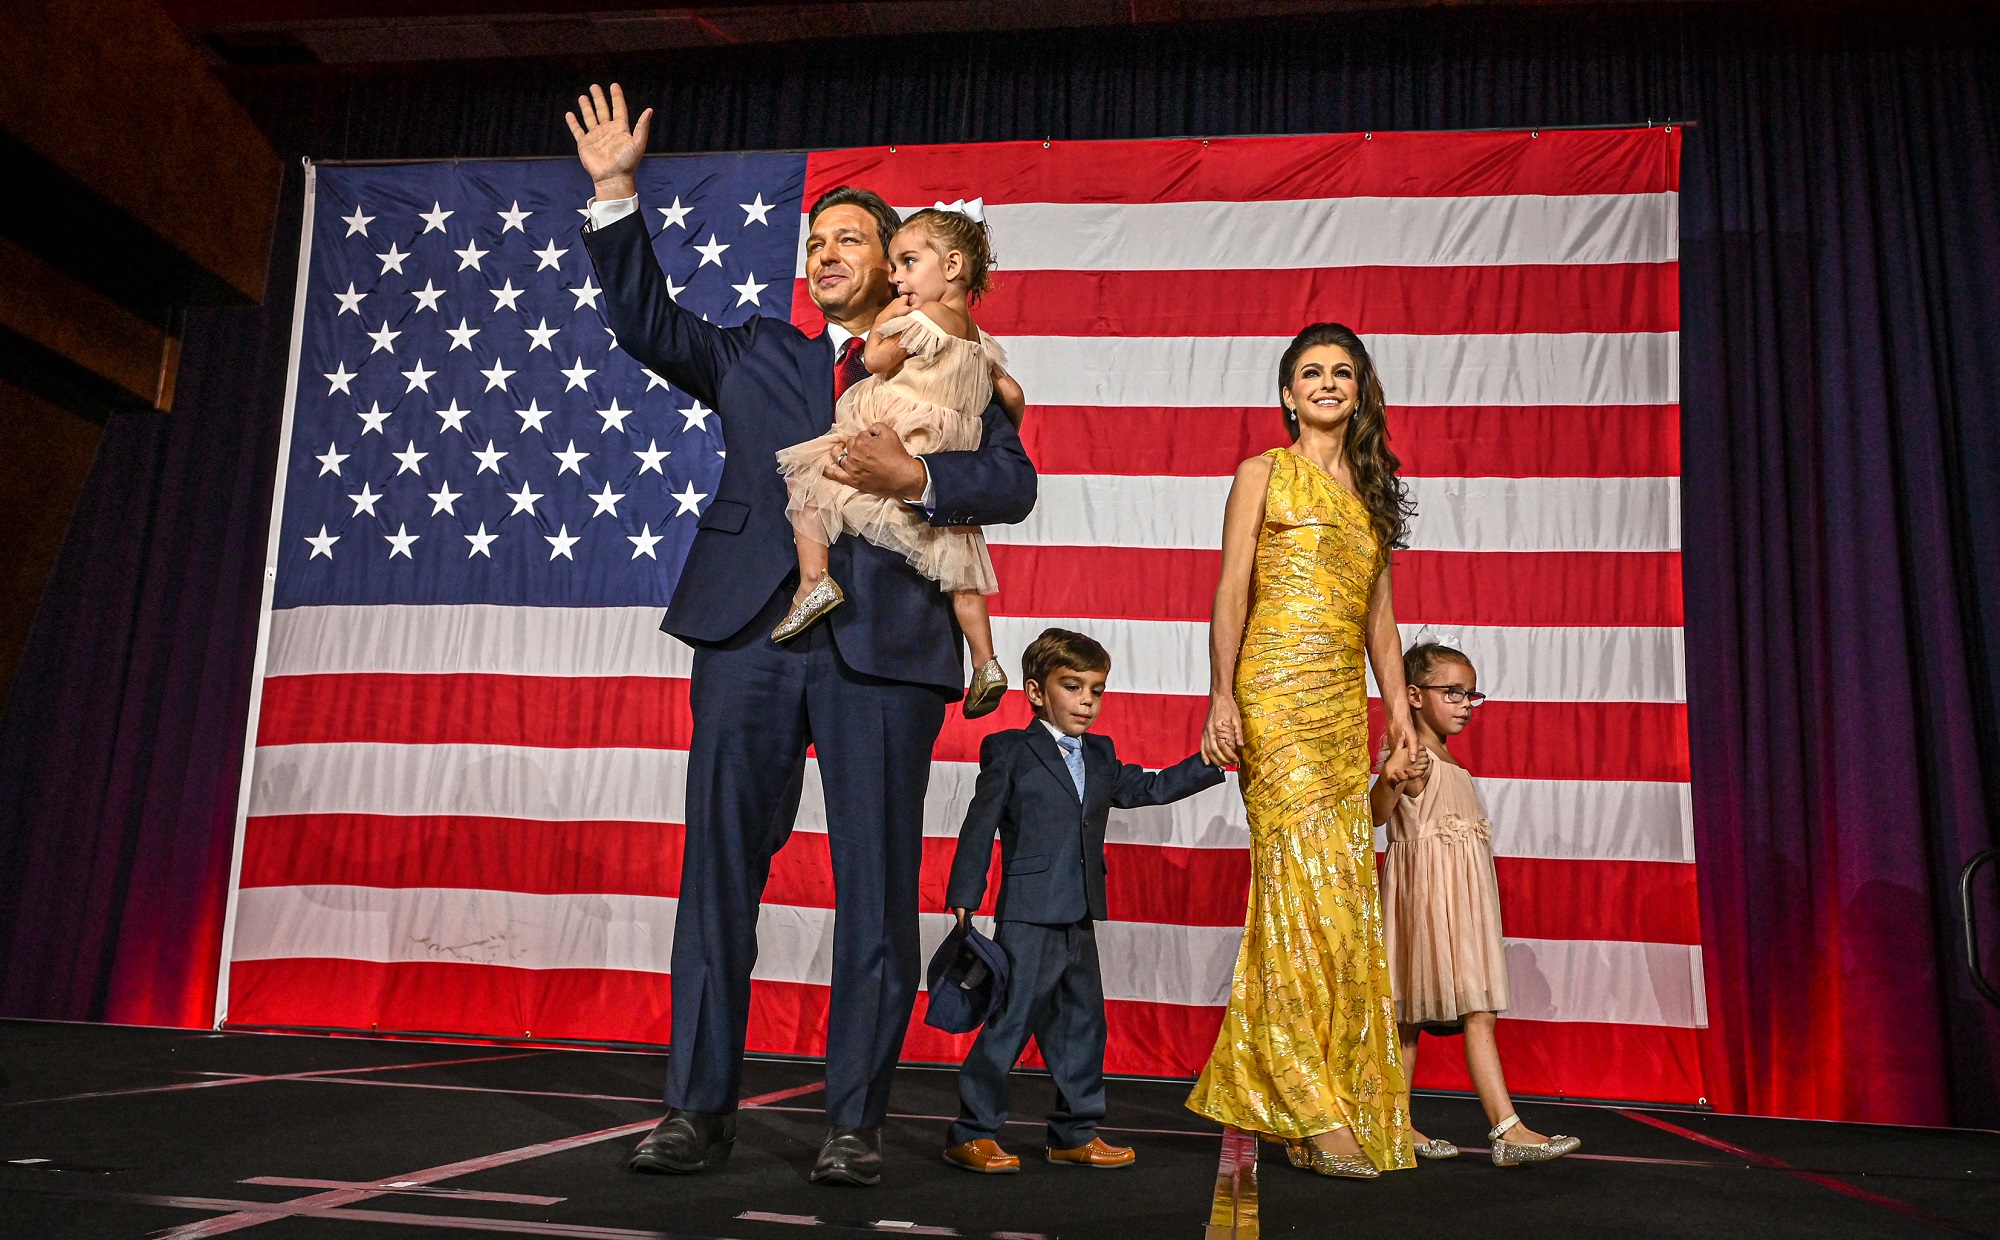 ران دسانتیس به همراه همسرش کیسی و فرزندانشان در یک مهمانی انتخاباتی - AFP